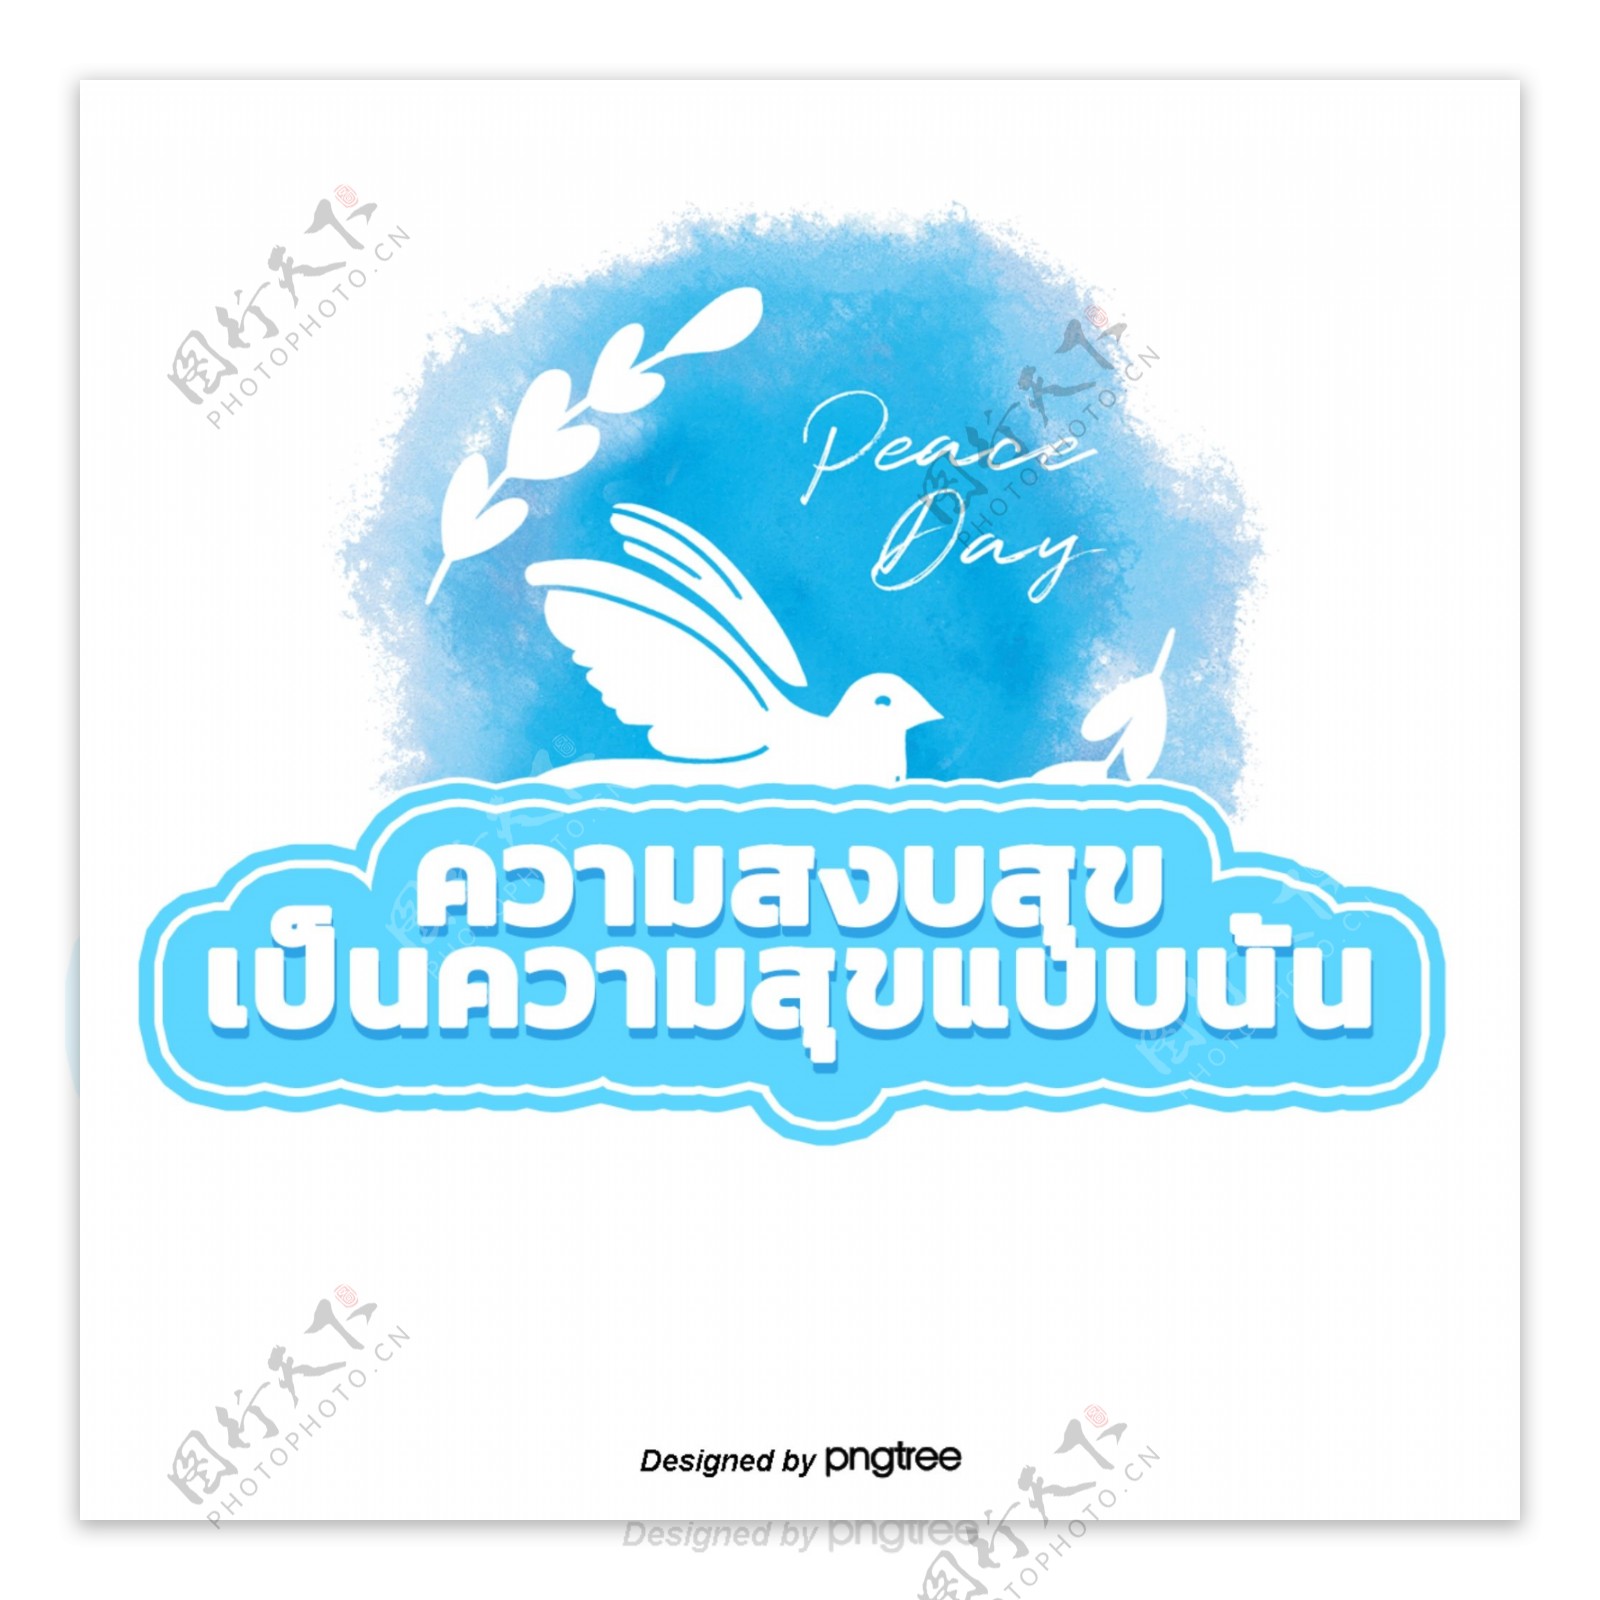 泰国白色字体文本蓝色鸟